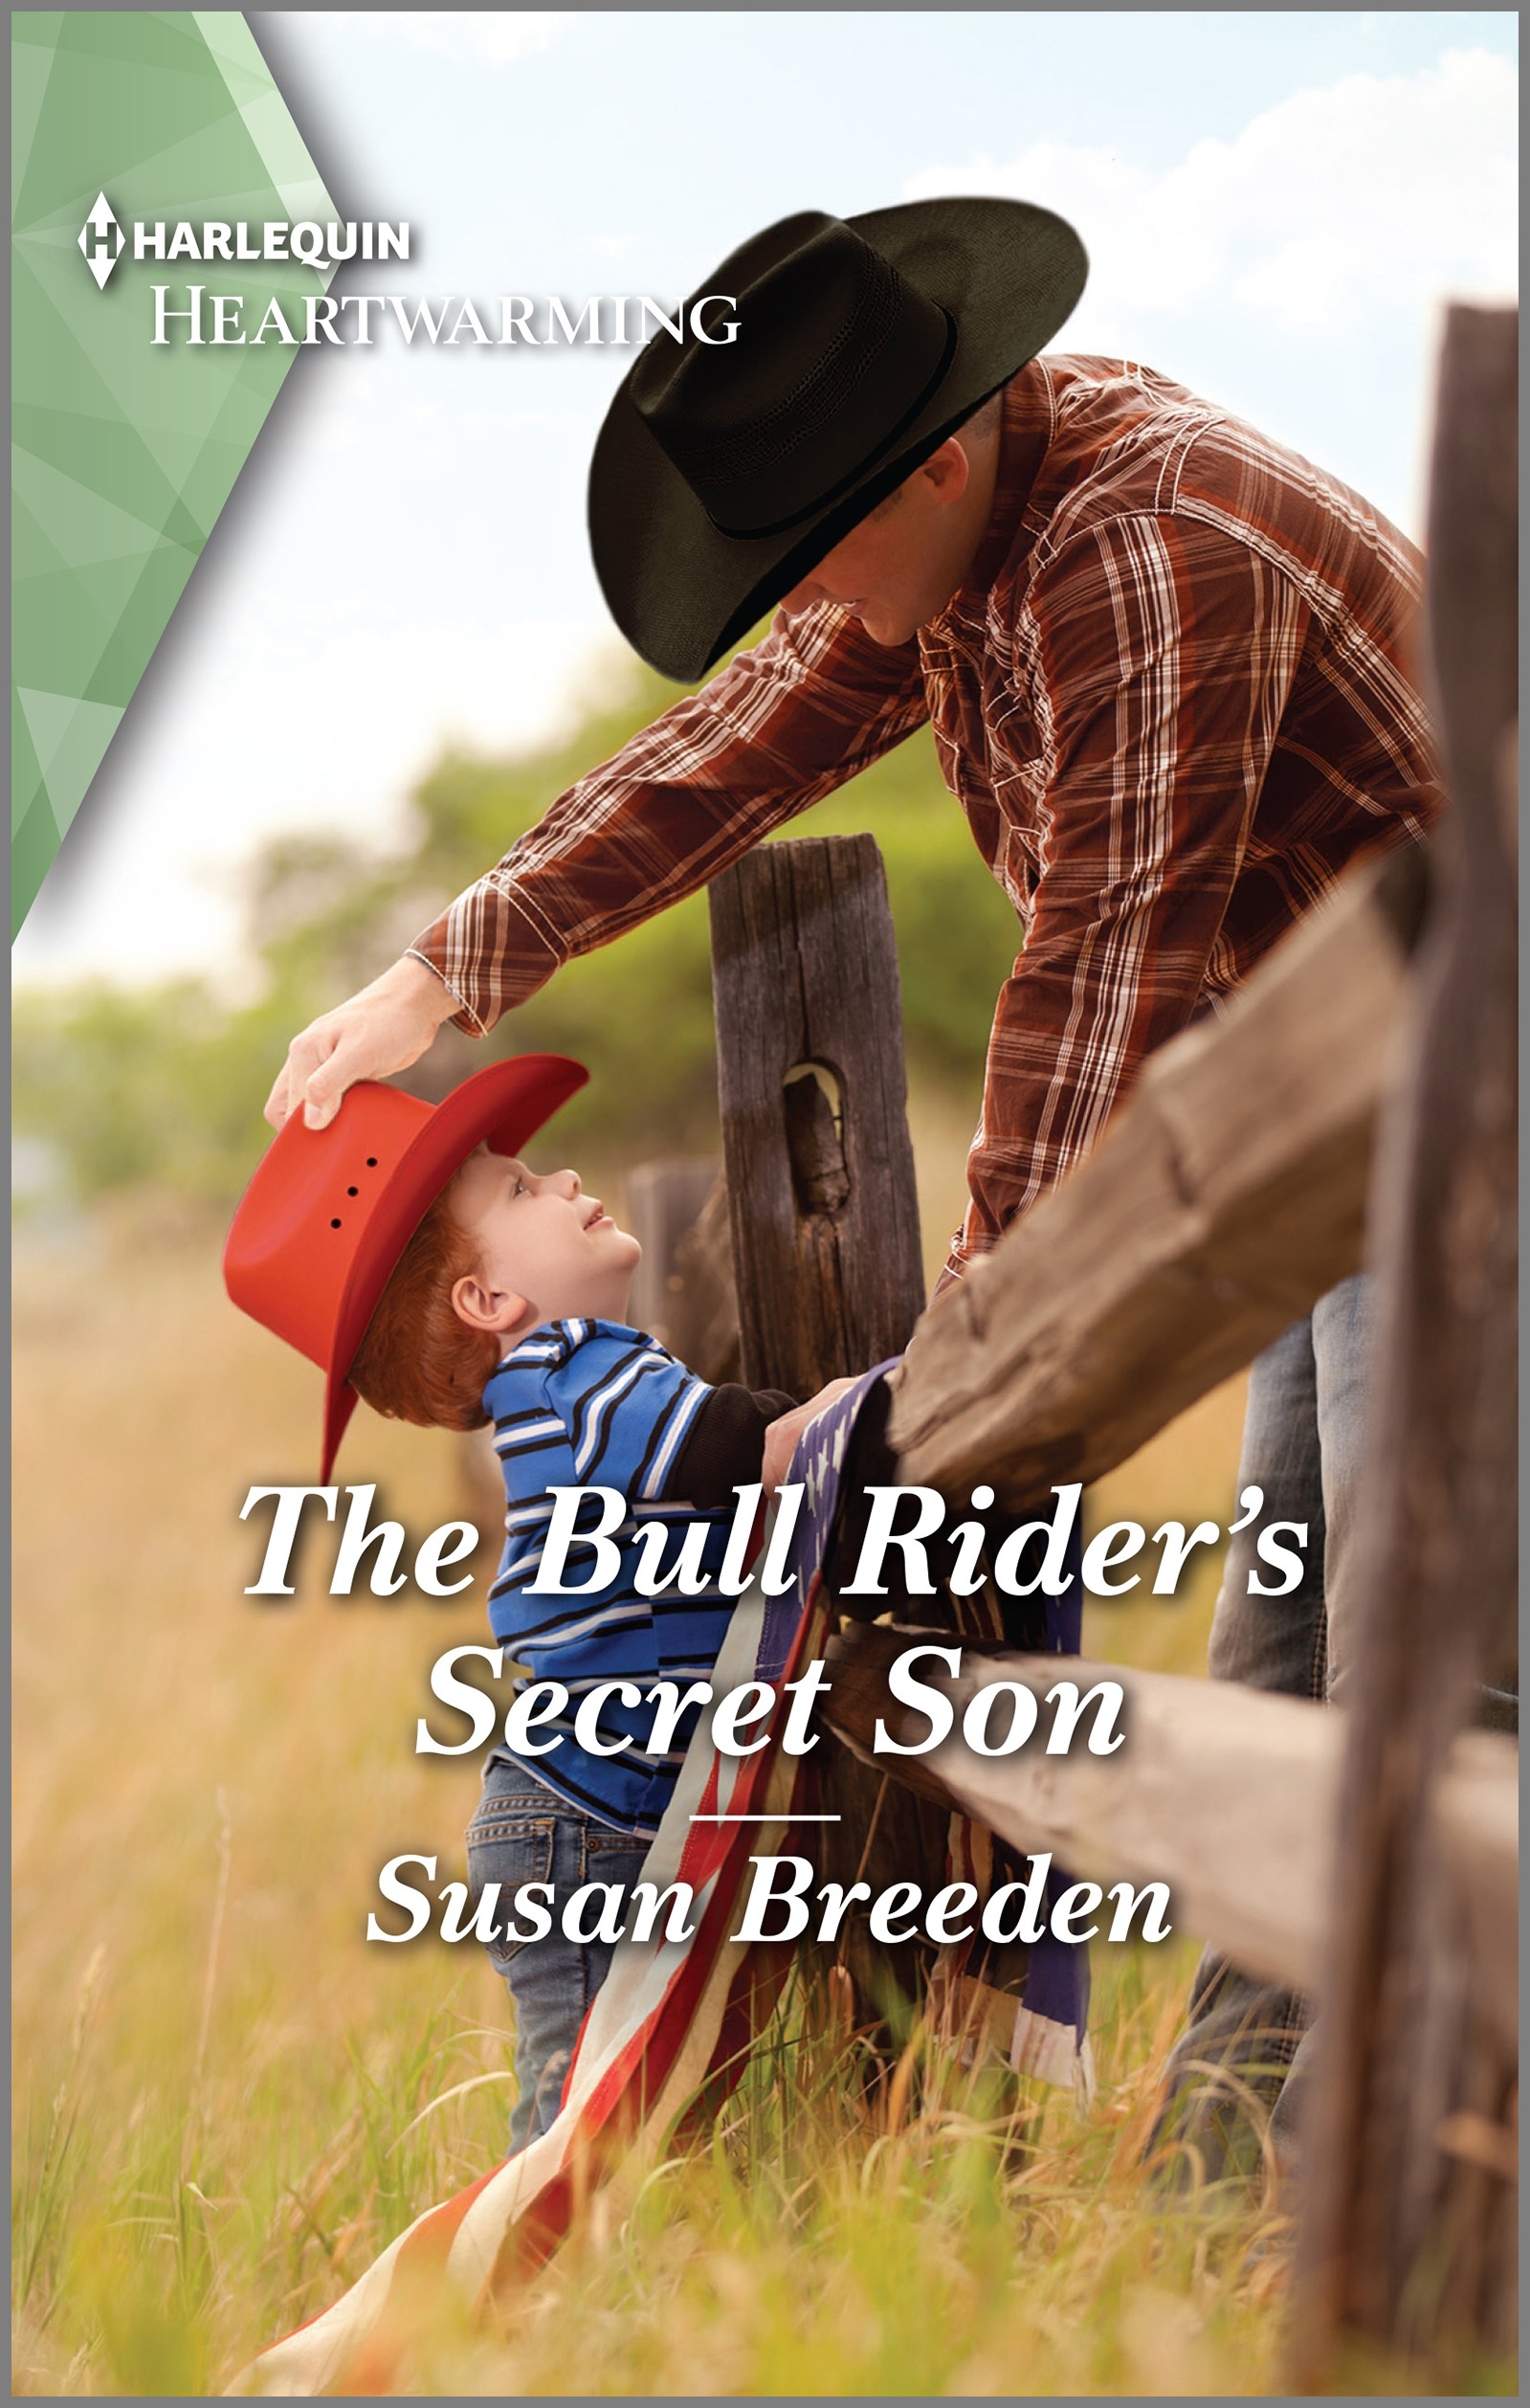 THE BULL RIDER’S SECRET SON by Susan Breeden